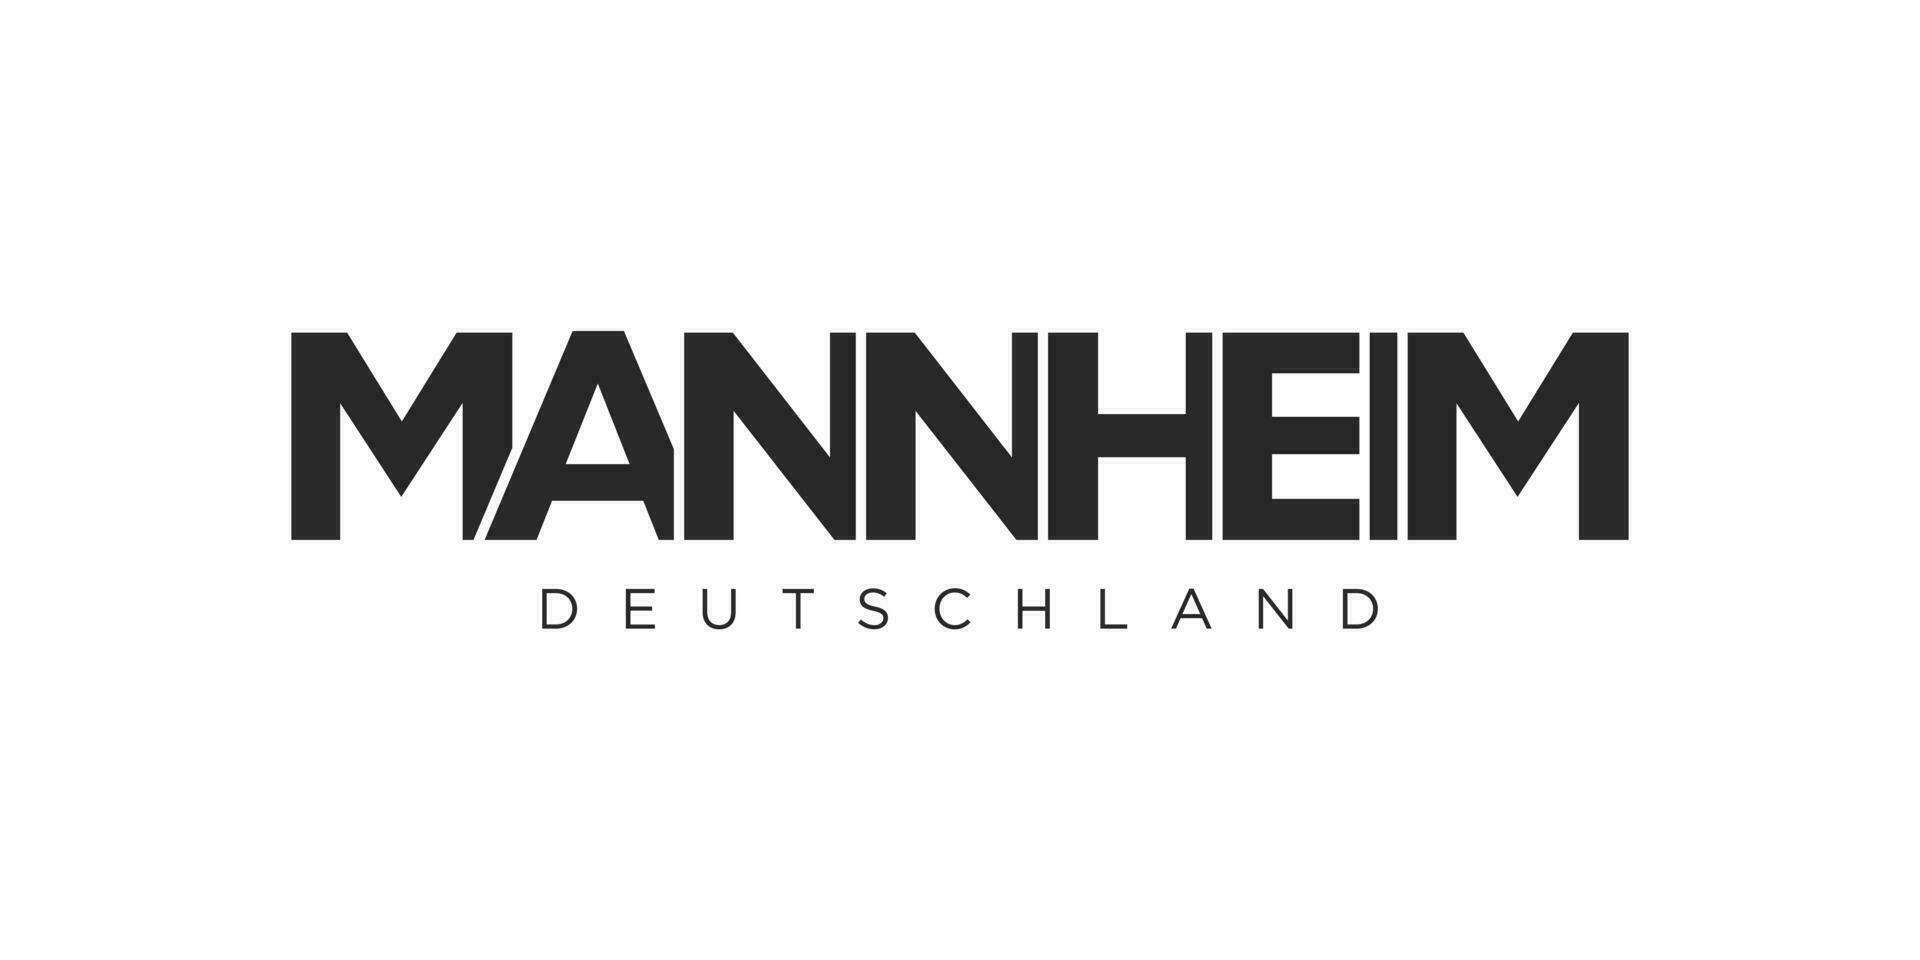 Mannheim Deutschland, modern und kreativ Vektor Illustration Design mit das Stadt von Deutschland zum Reise Banner, Poster, und Postkarten.